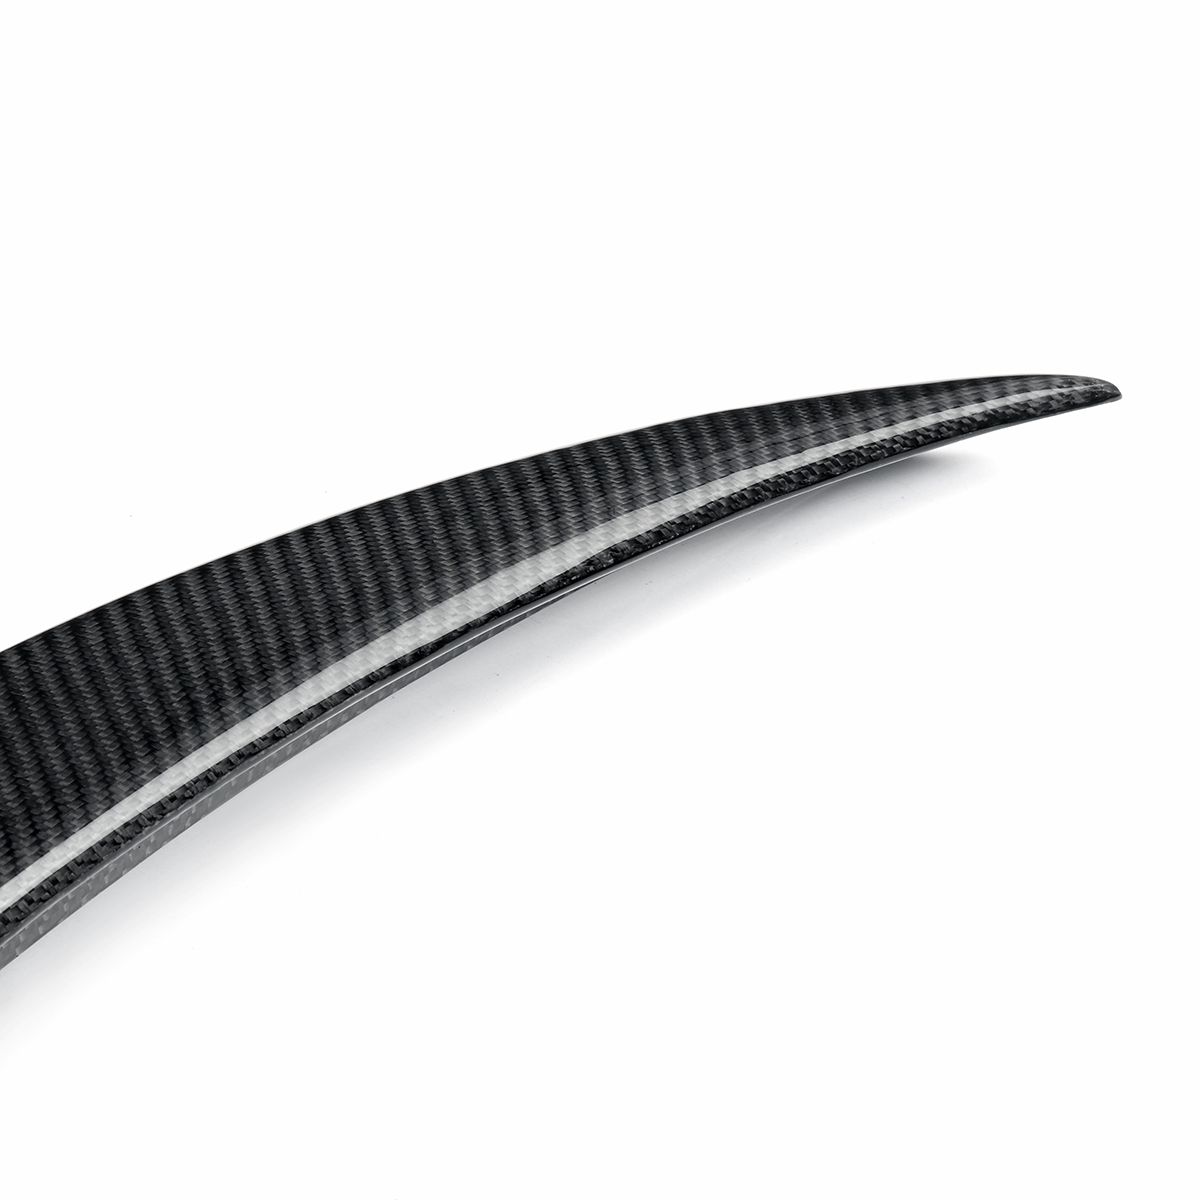 Car-Carbon-Fiber-Style-Rear-Trunk-Spoiler-Splitter-Wing-For-Infiniti-Q50-Jdm-2014-2020-1655988